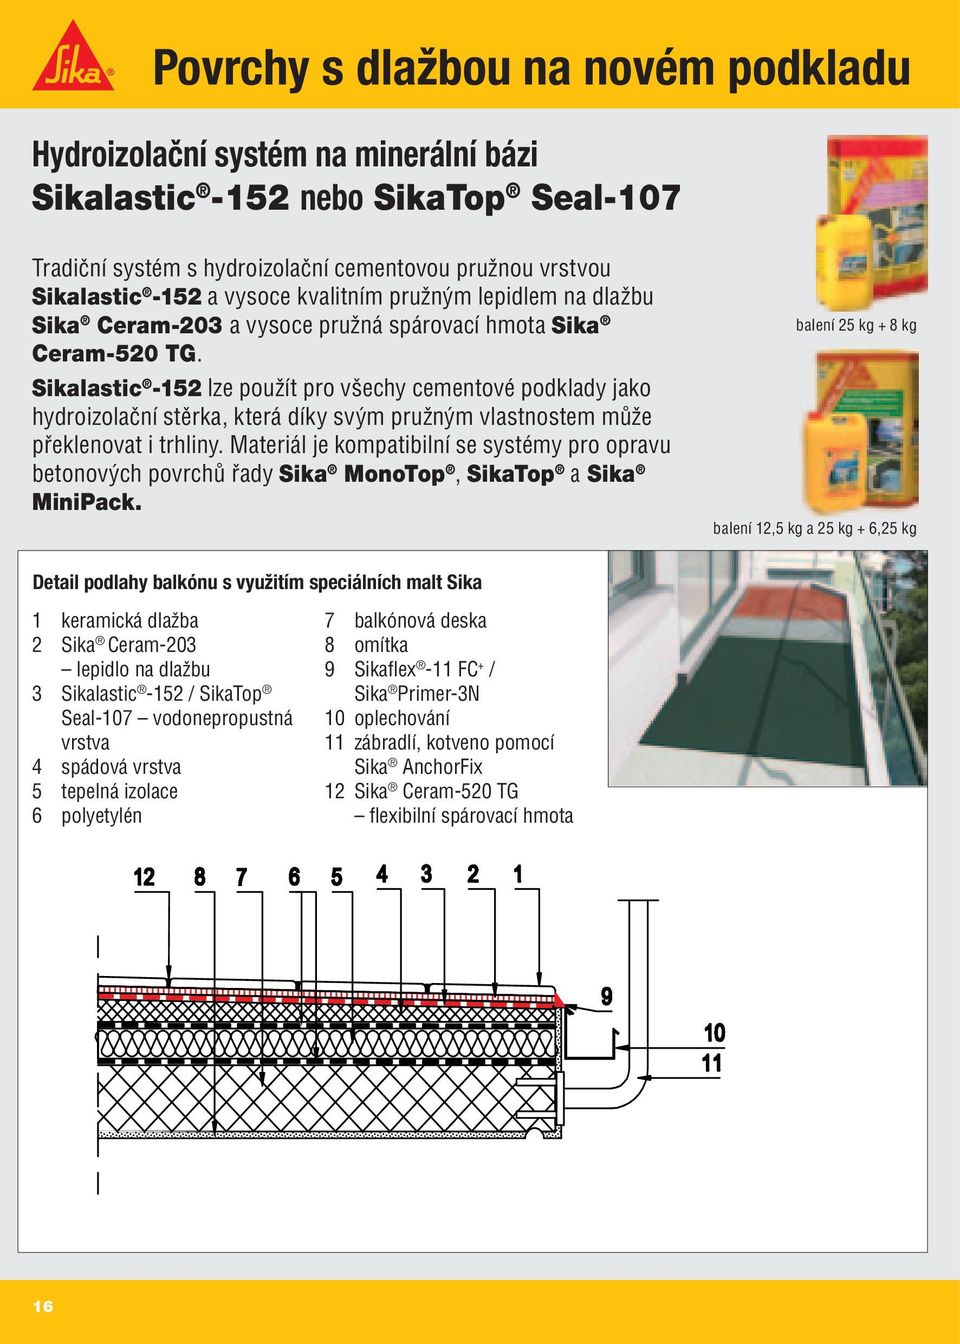 Sikalastic -152 lze použít pro všechy cementové podklady jako hydroizolační stěrka, která díky svým pružným vlastnostem může překlenovat i trhliny.